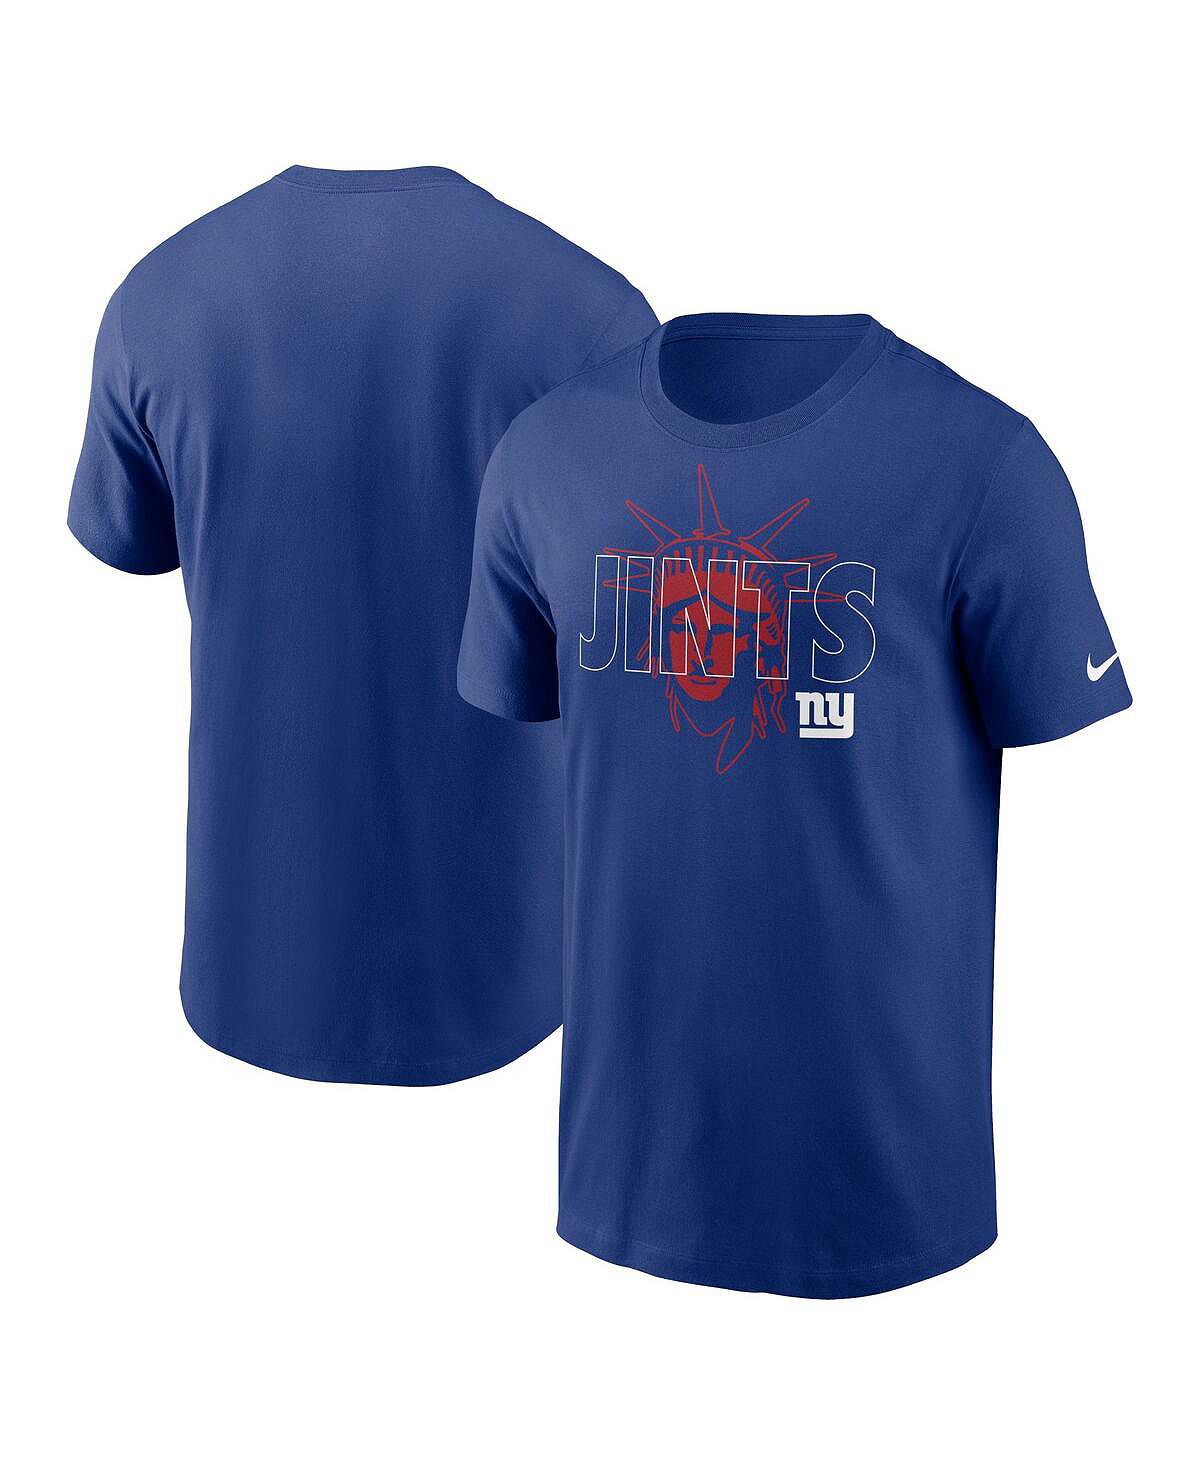 йорк андреа ложная гордость 10 073 Мужская футболка Royal New York Giants Local Essential Nike